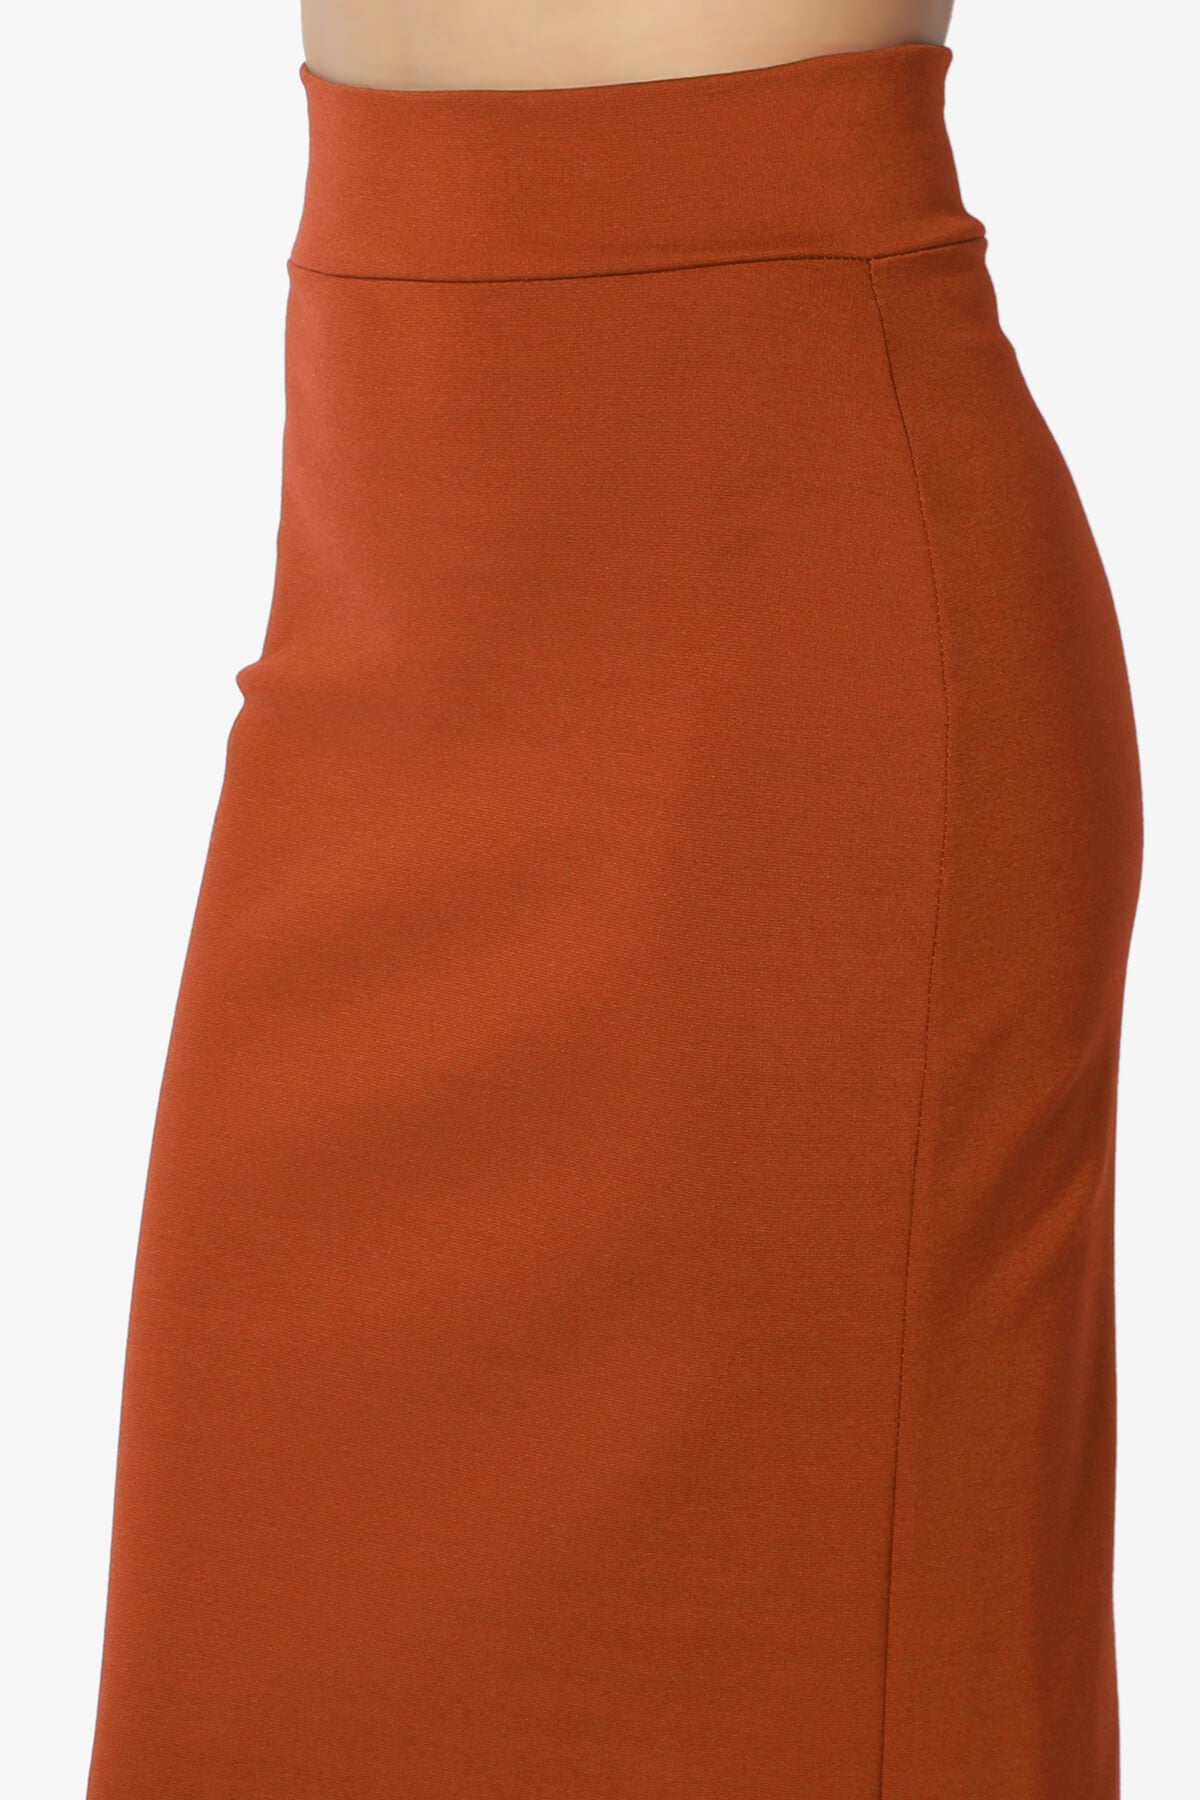 Carleta Mid Calf Pencil Skirt RUST_5